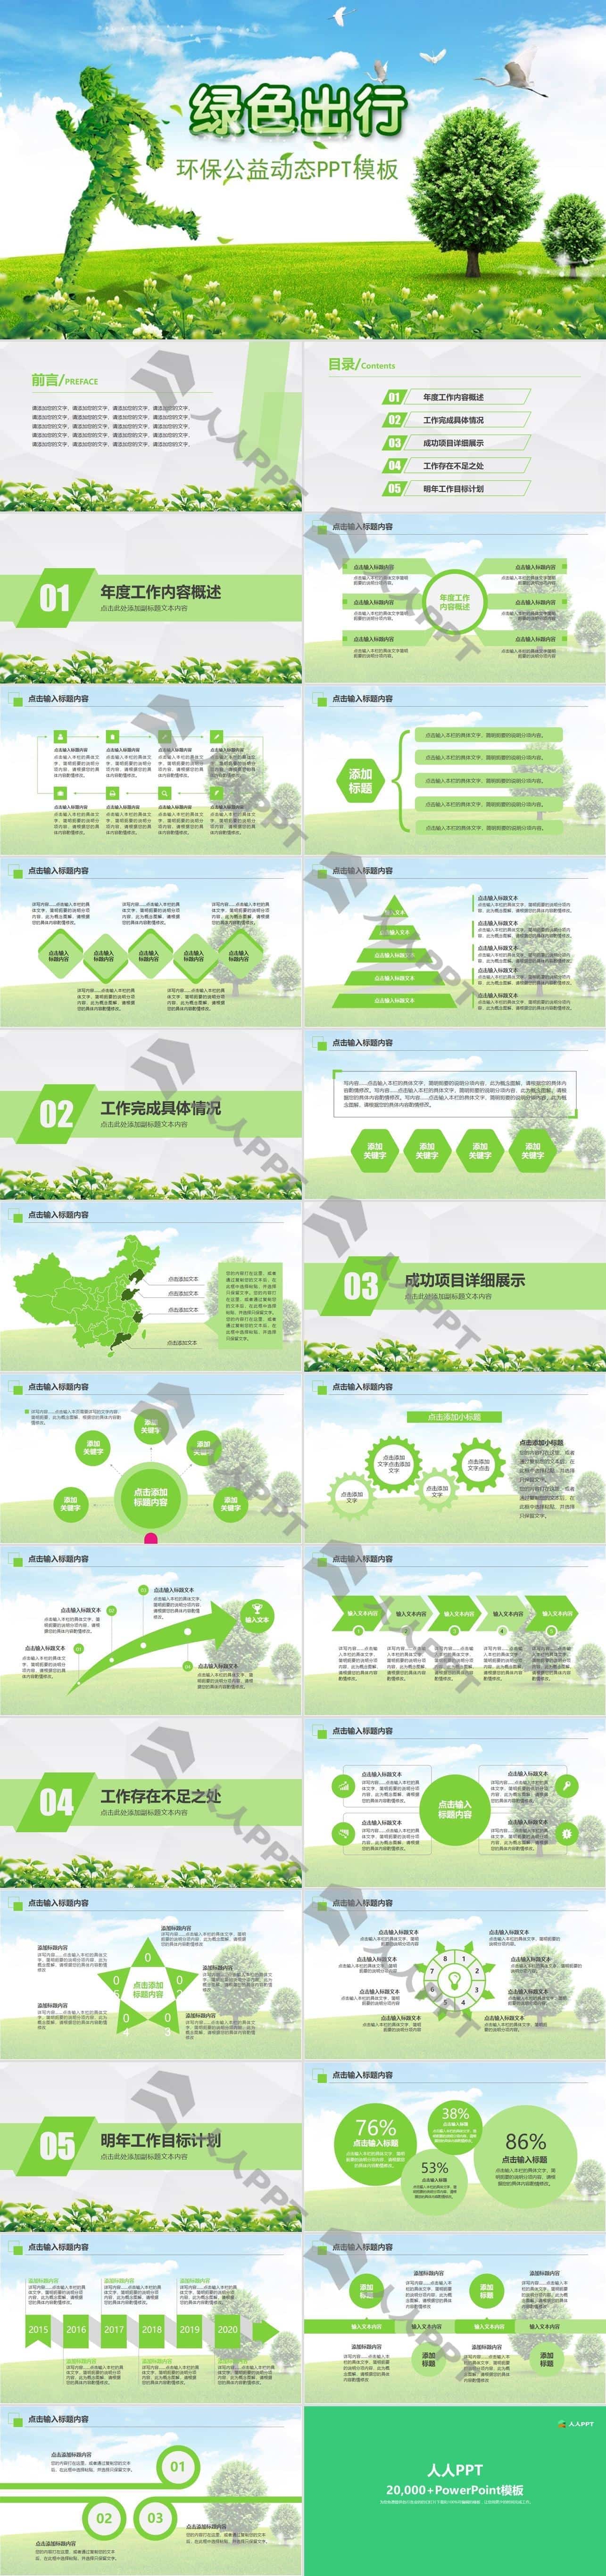 绿色出行――环境保护公益宣传PPT模板长图